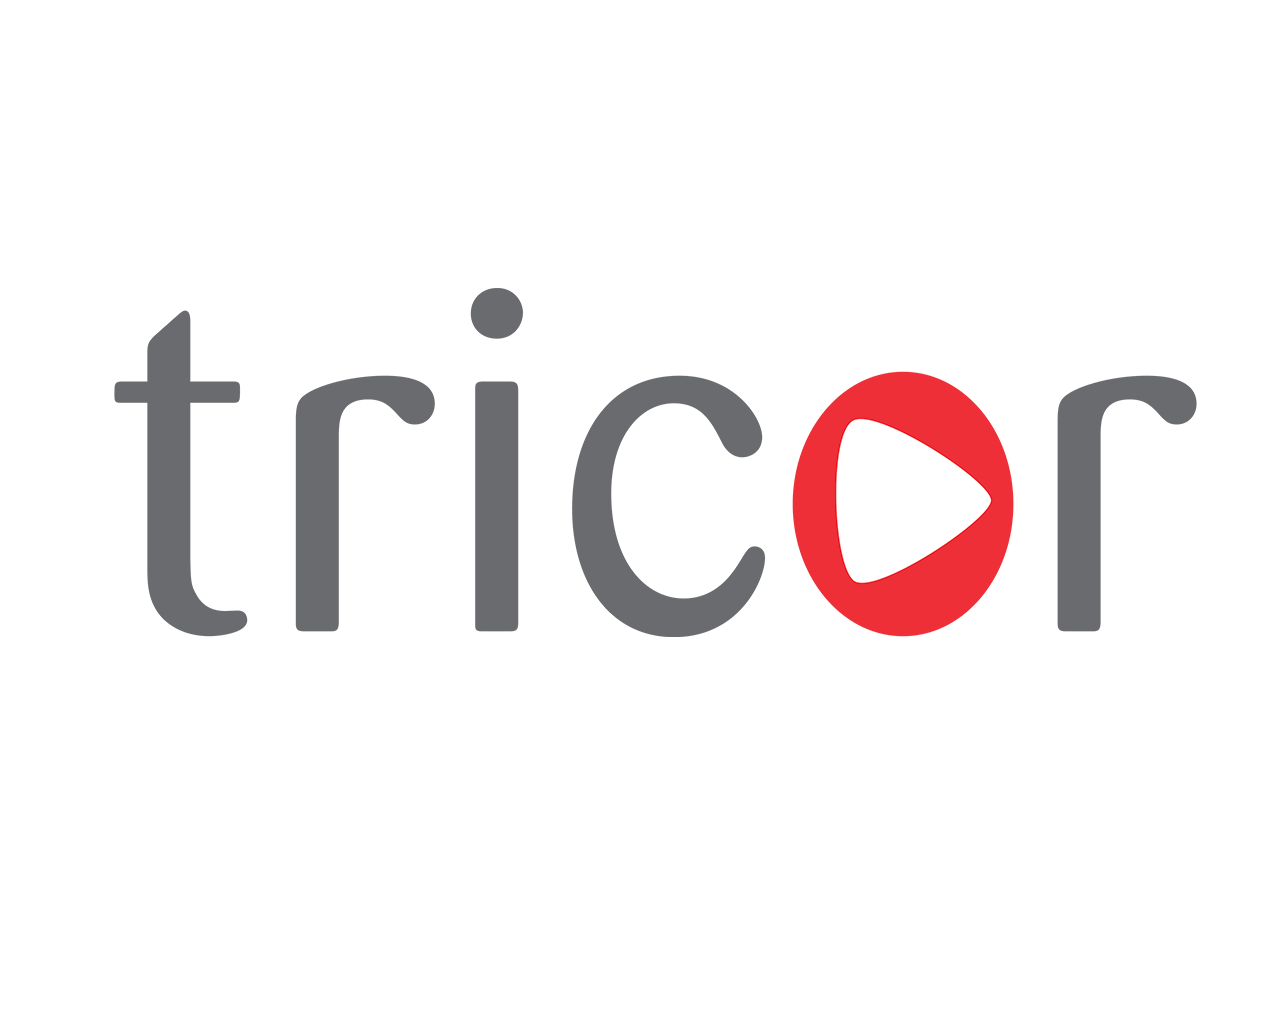 Tricor Logo